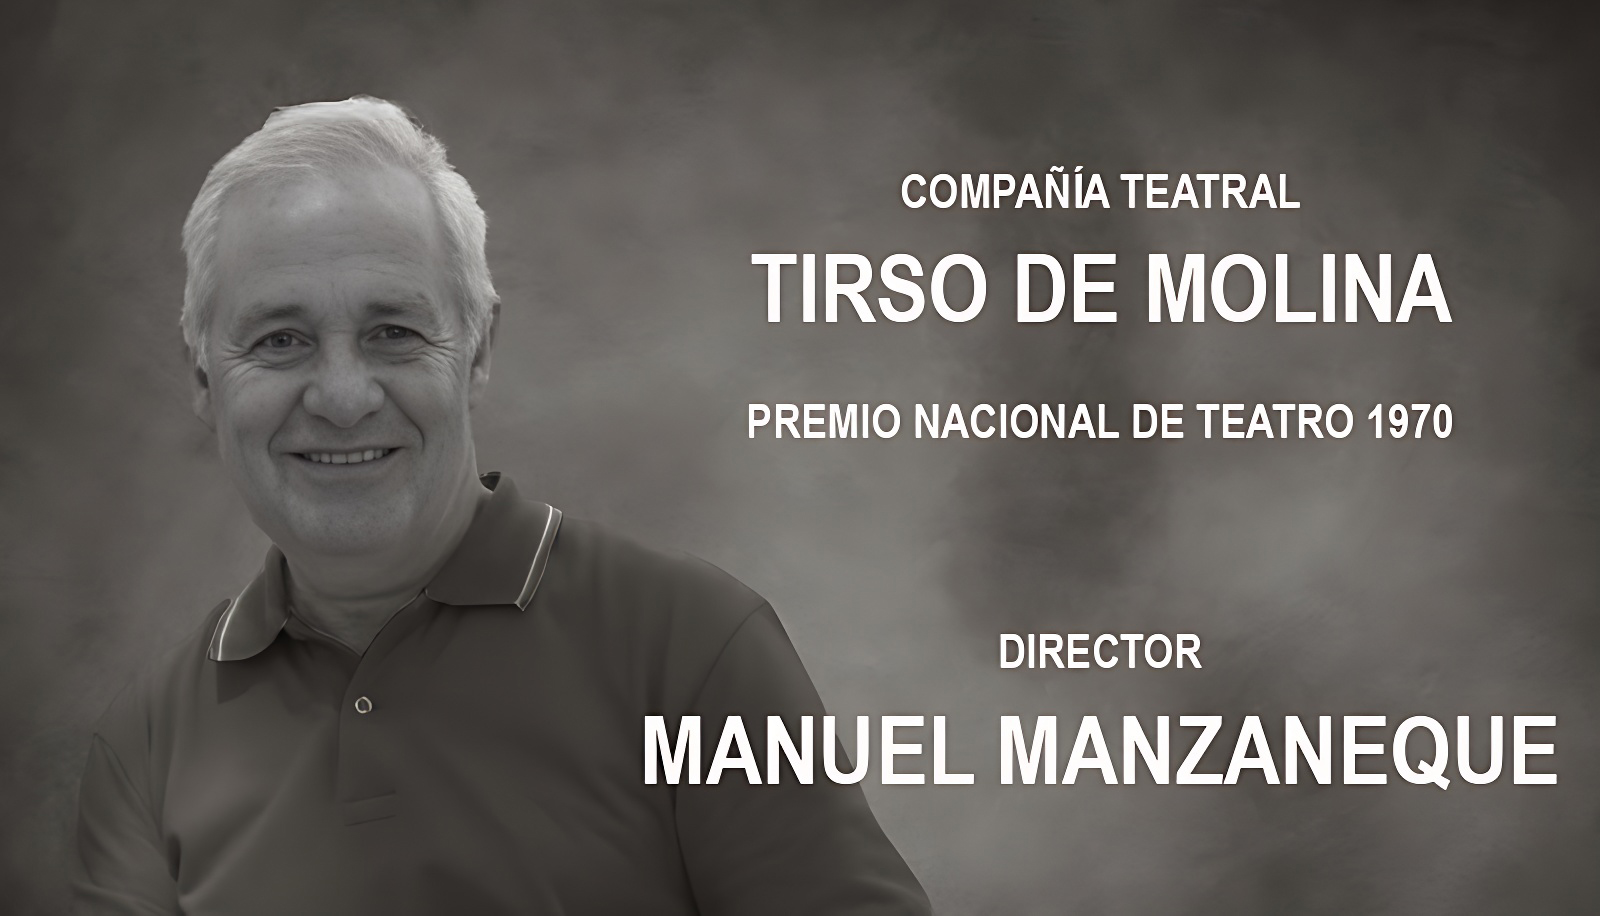 Manuel Manzaneque